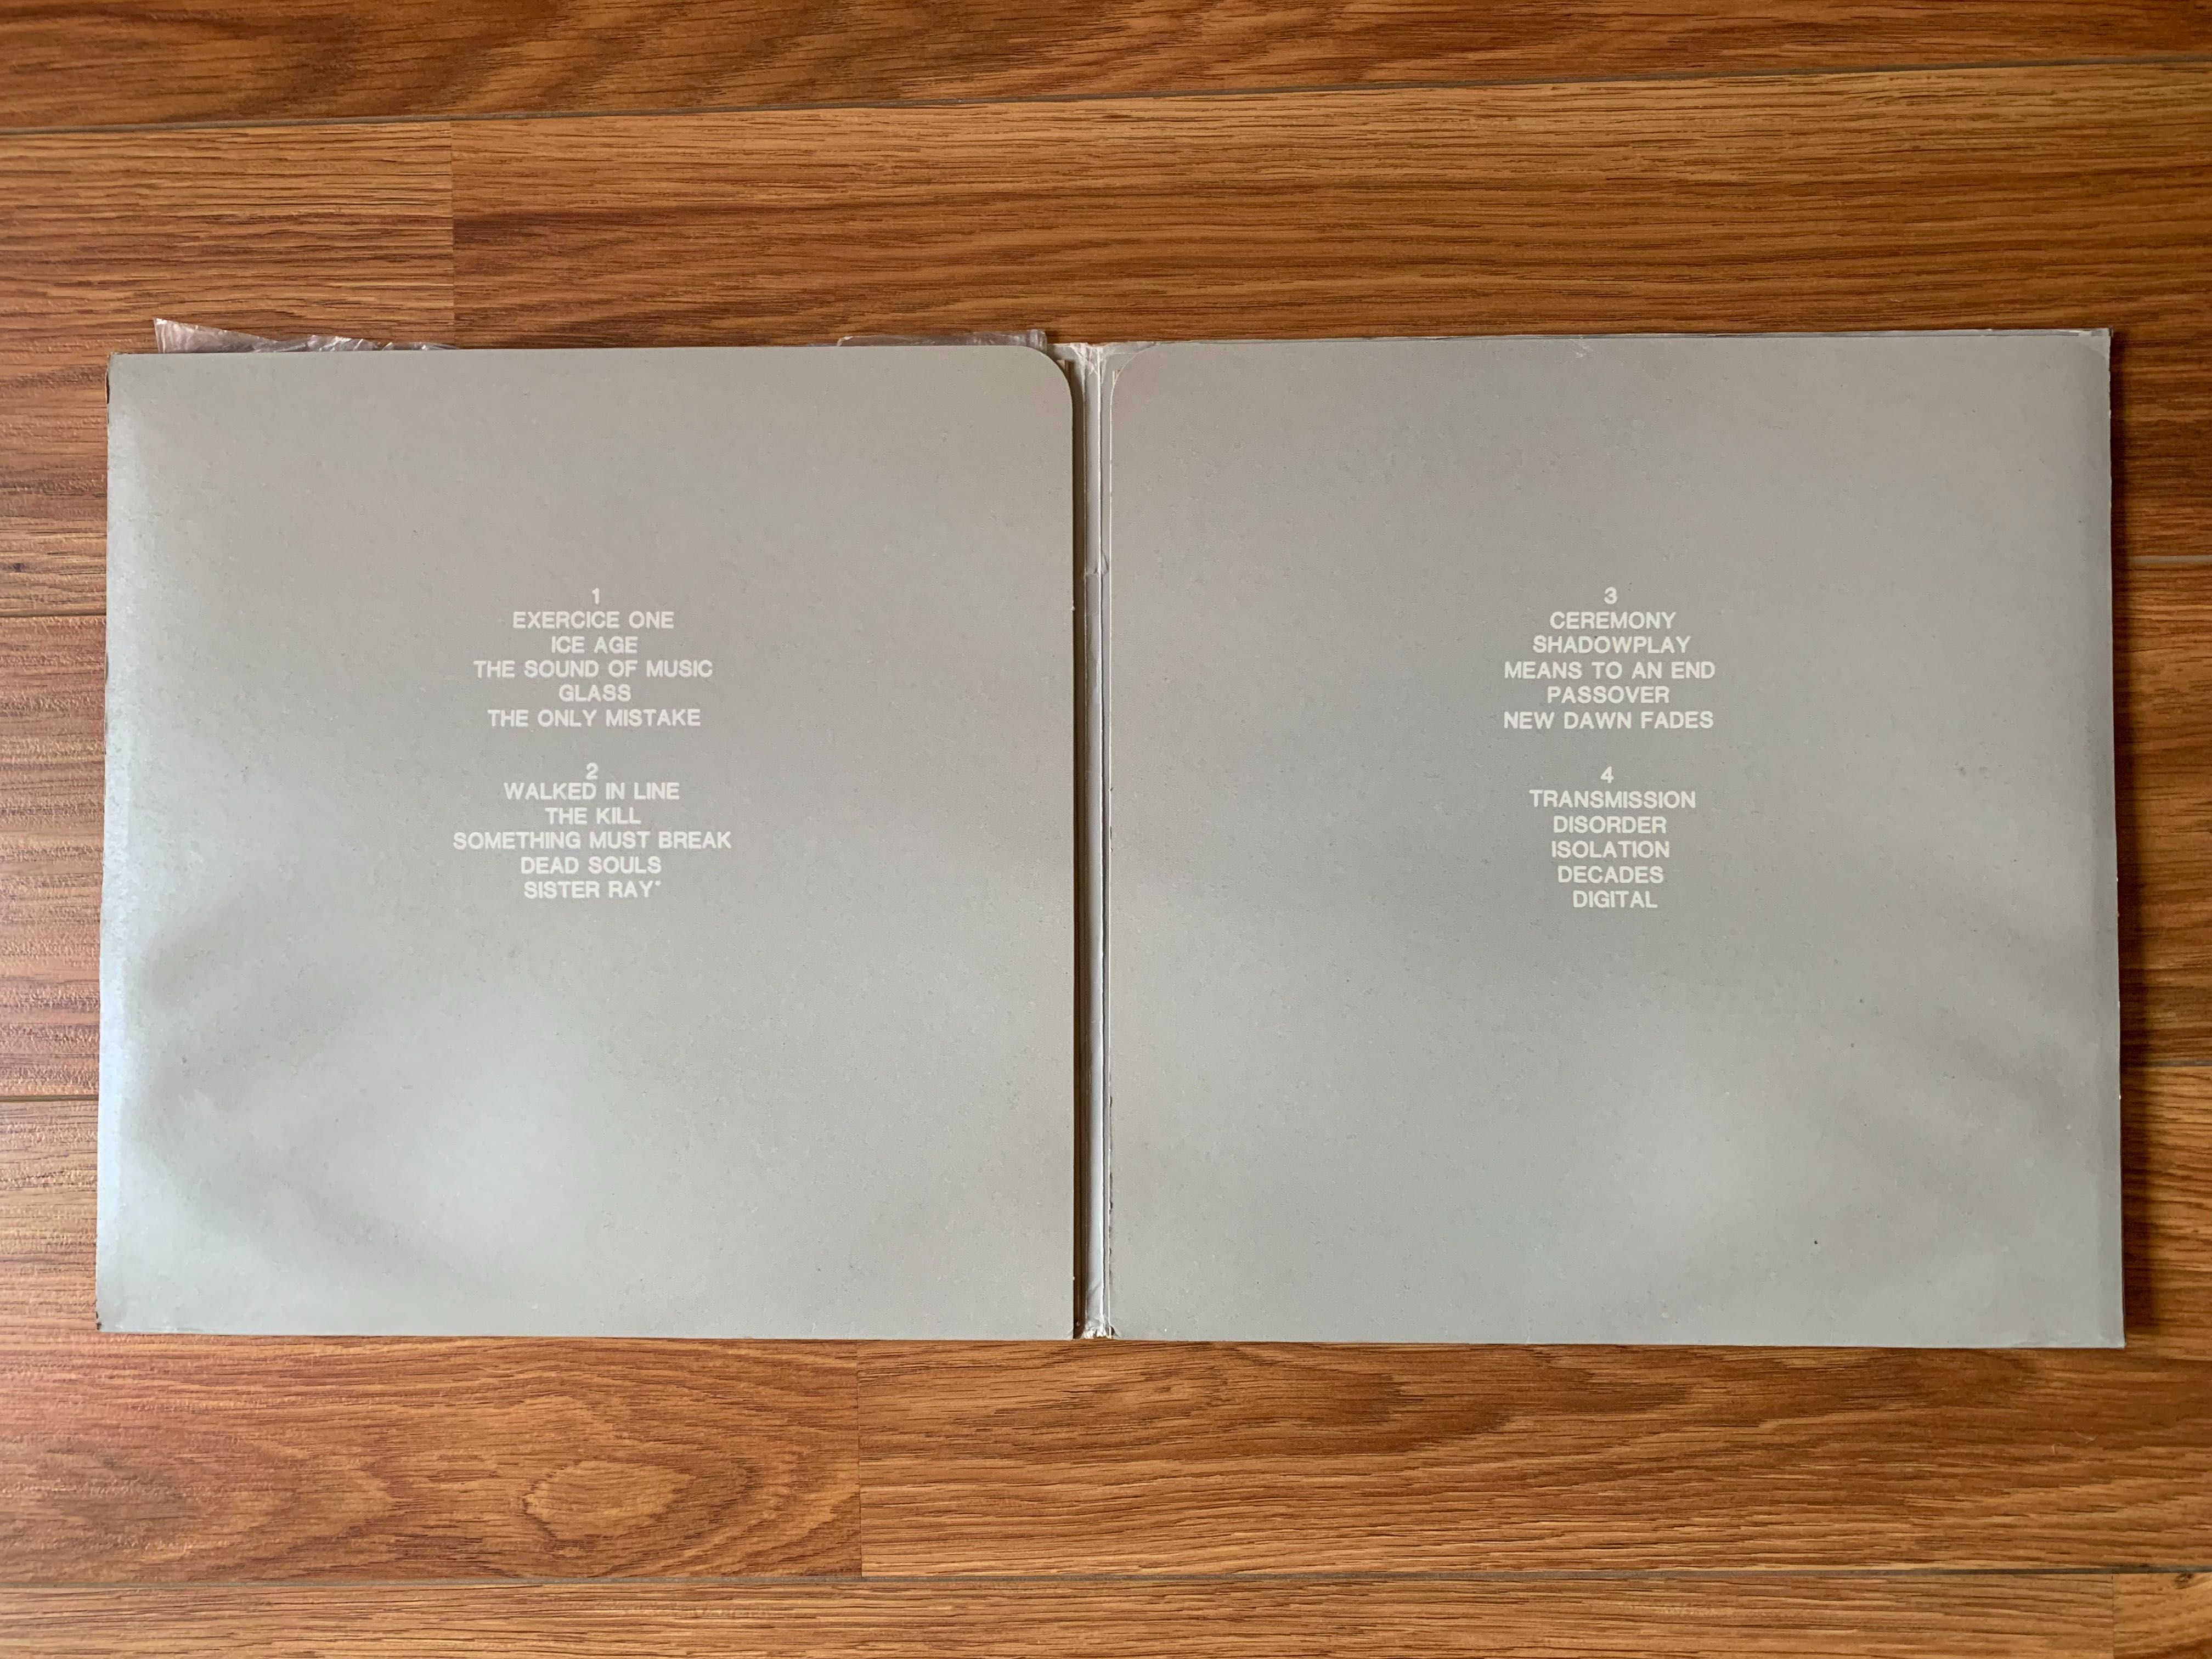 Joy Division - Still - Vinil - LP - 2 discos